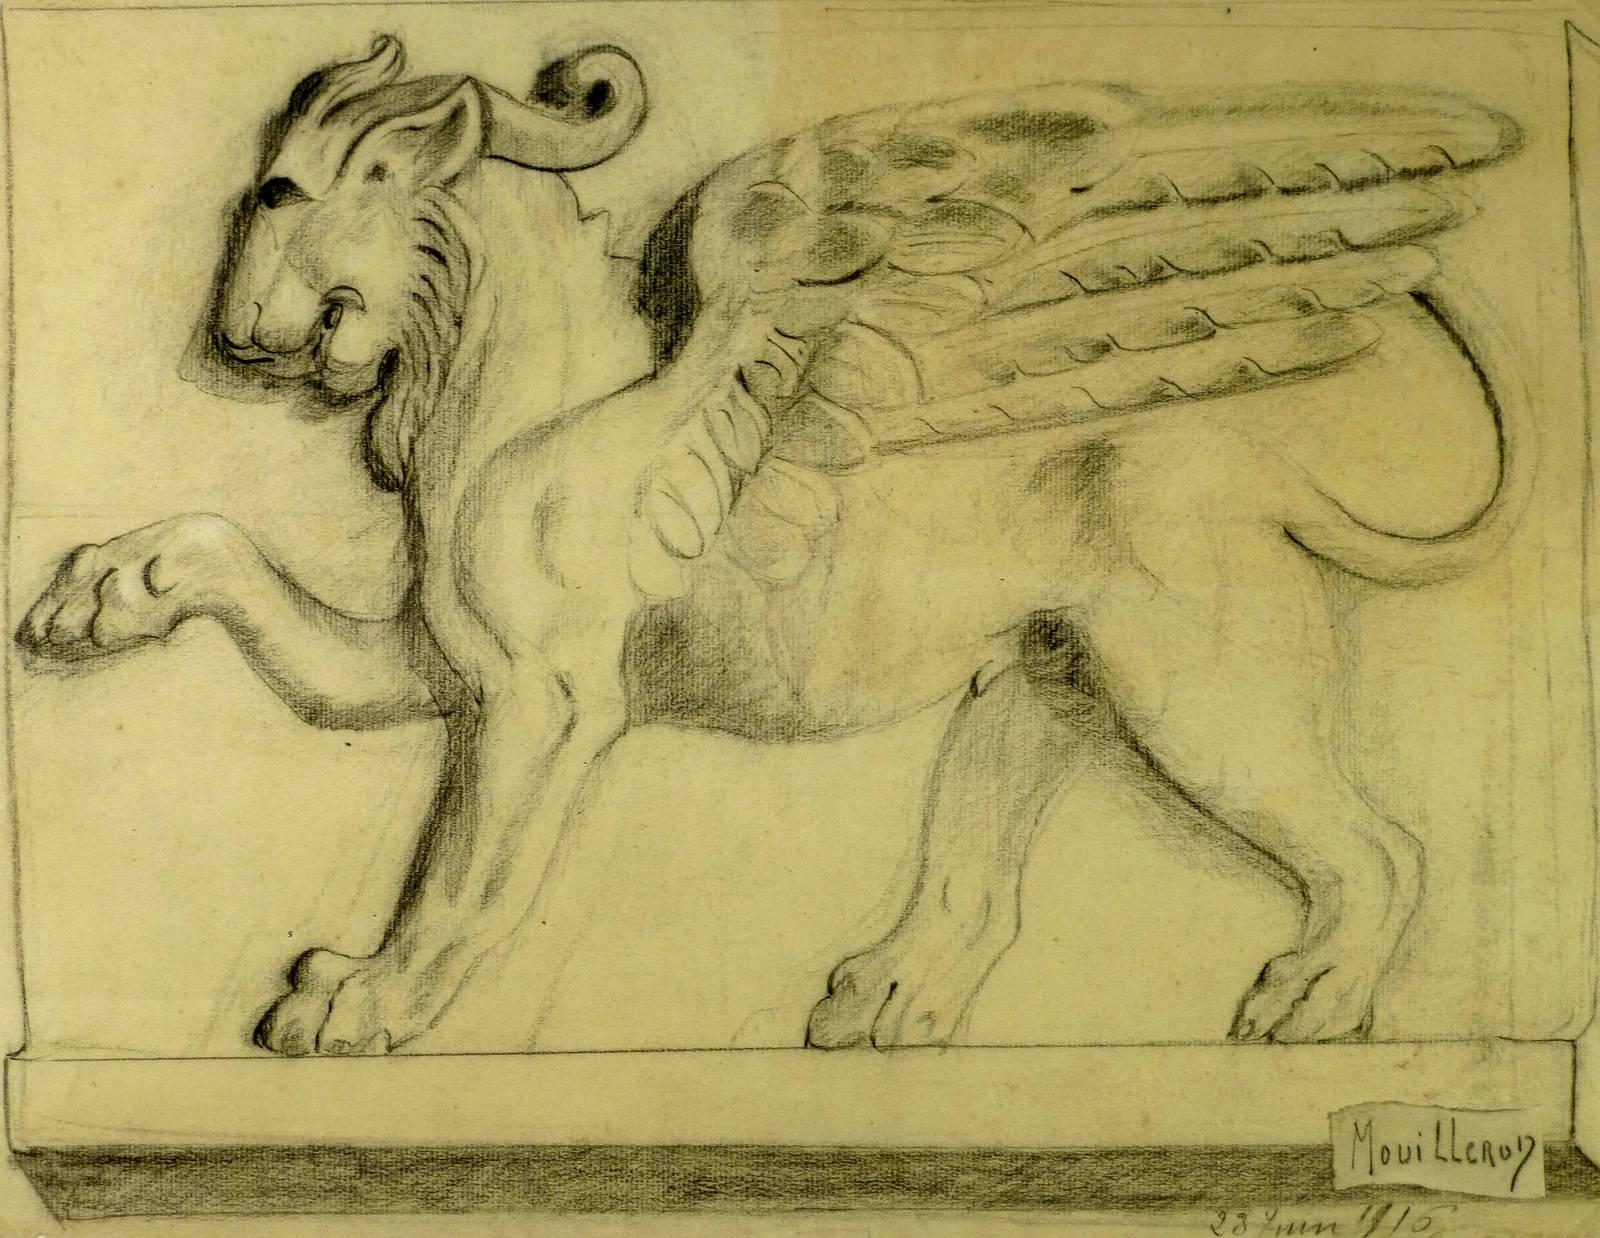 Mouilleron Animal Art - Winged Lion